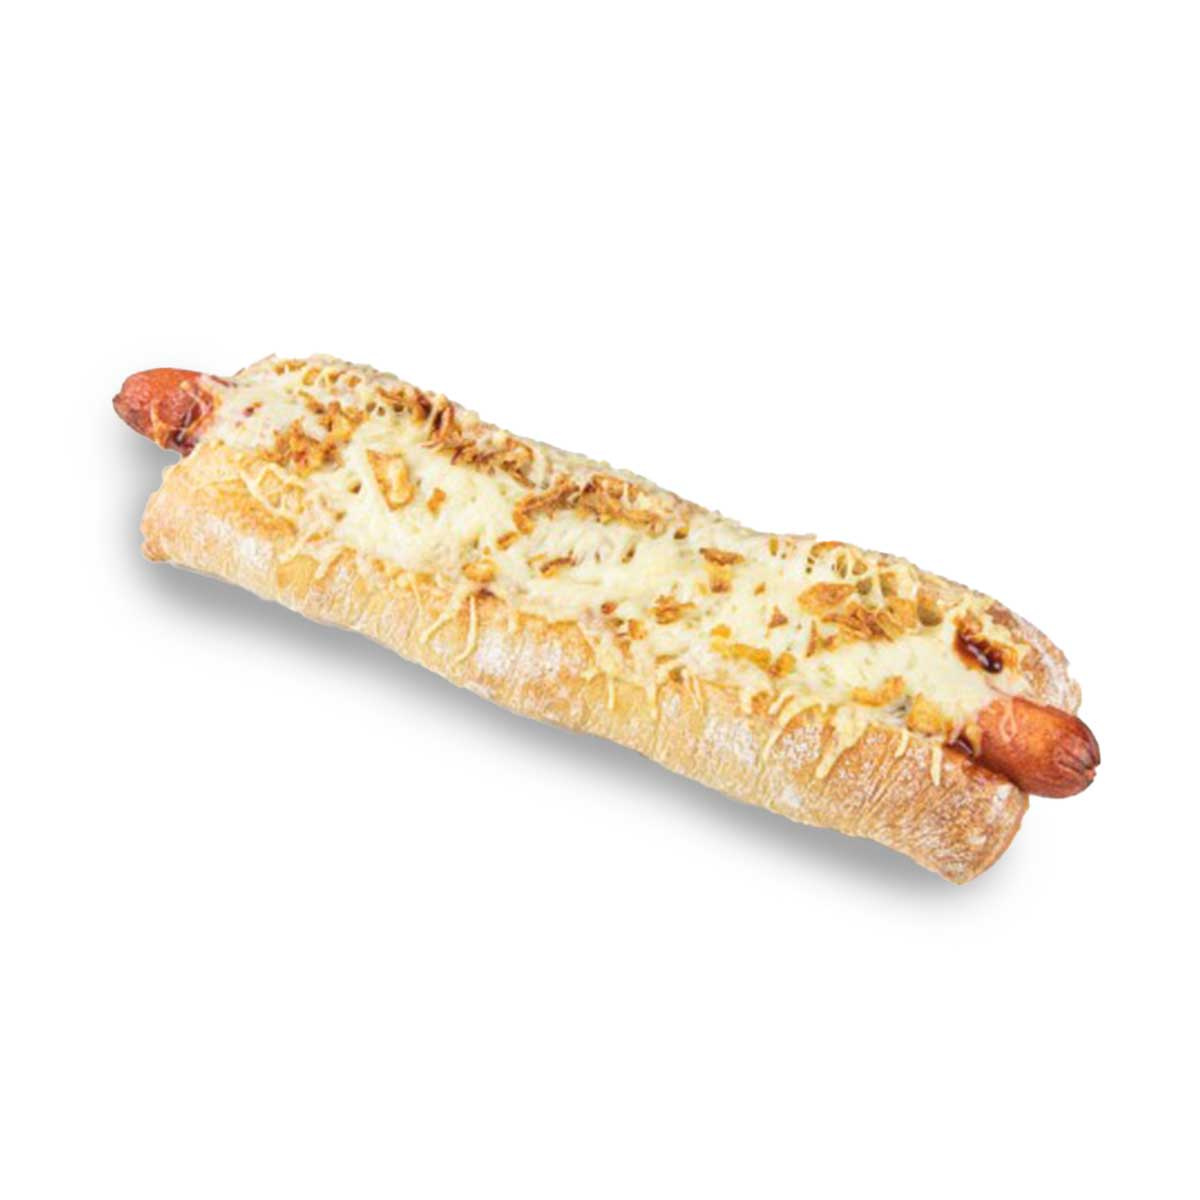 Hot dog français